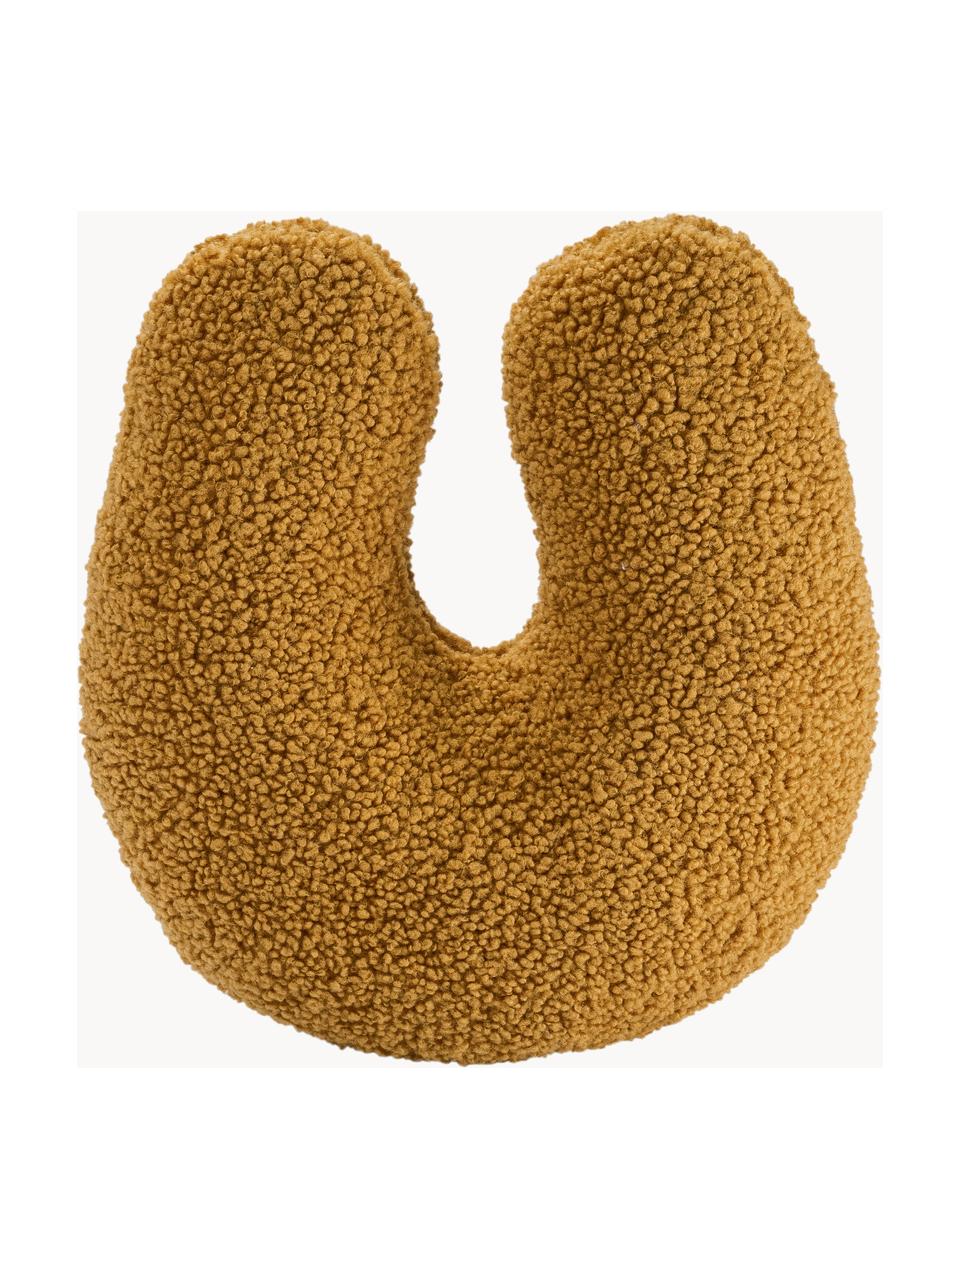 U-Kissen Arch aus Teddy, Bezug: Teddy (100 % Polyester), Senfgelb, B 38 x L 42 cm